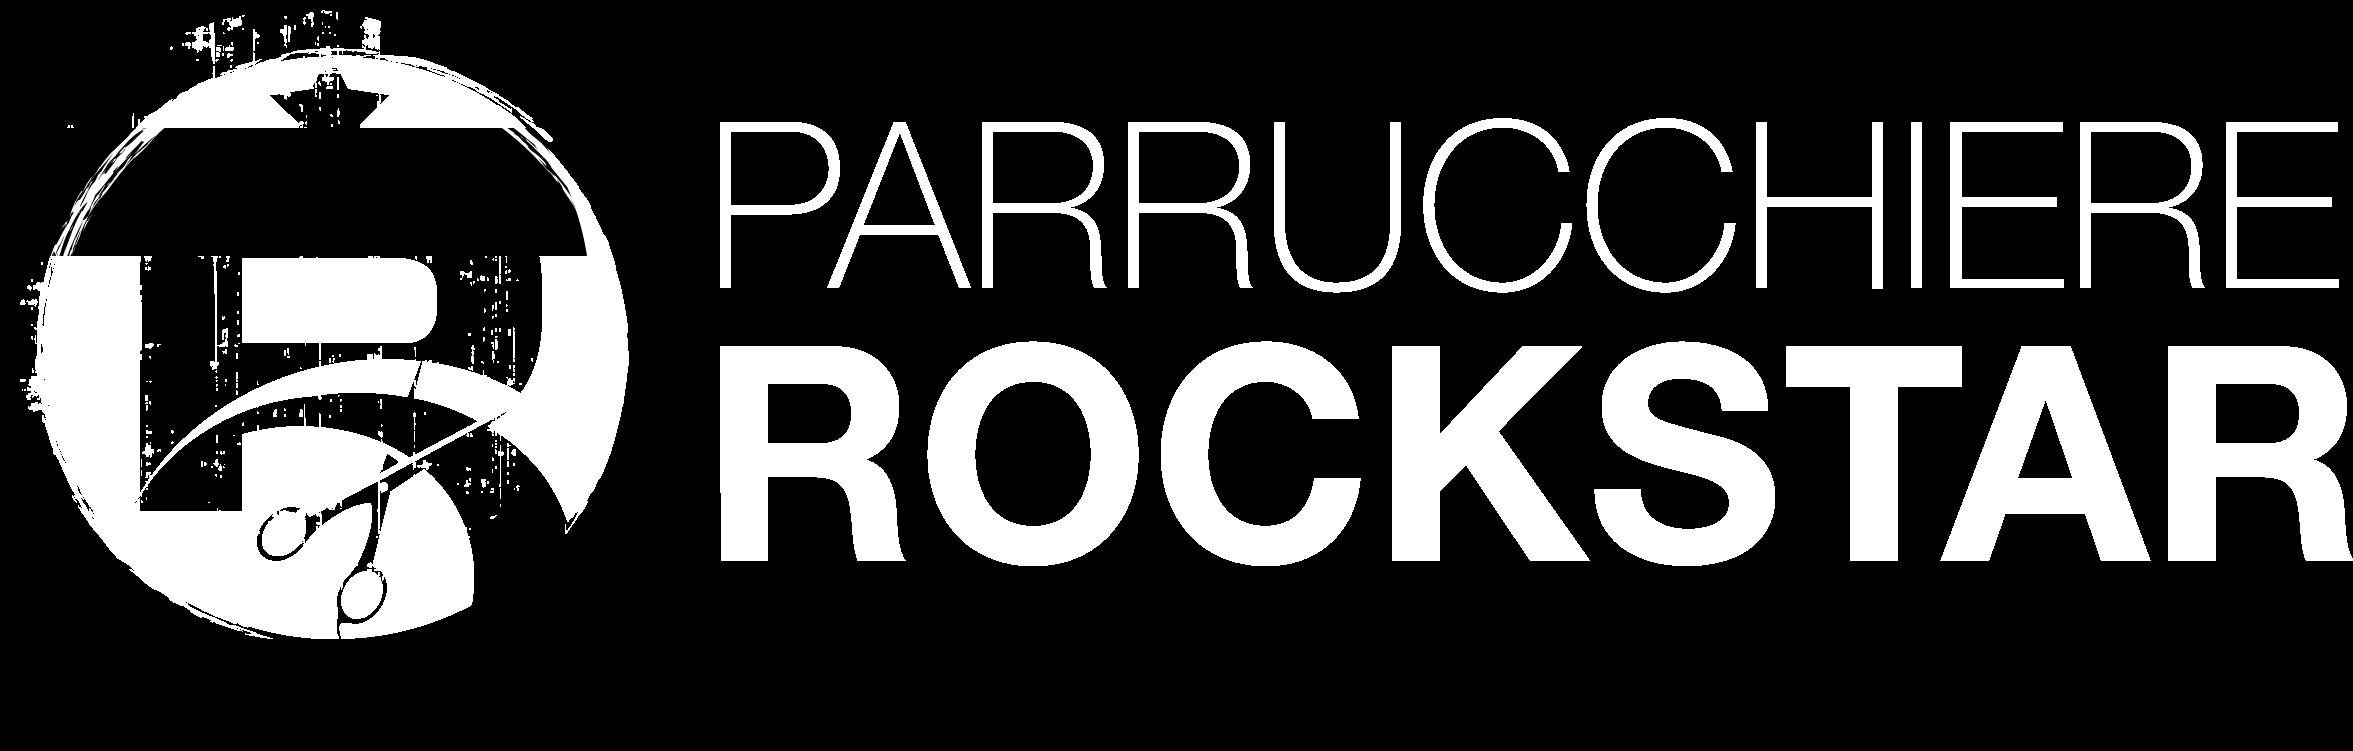 logo-parrucchiere-rockstar-voxloud